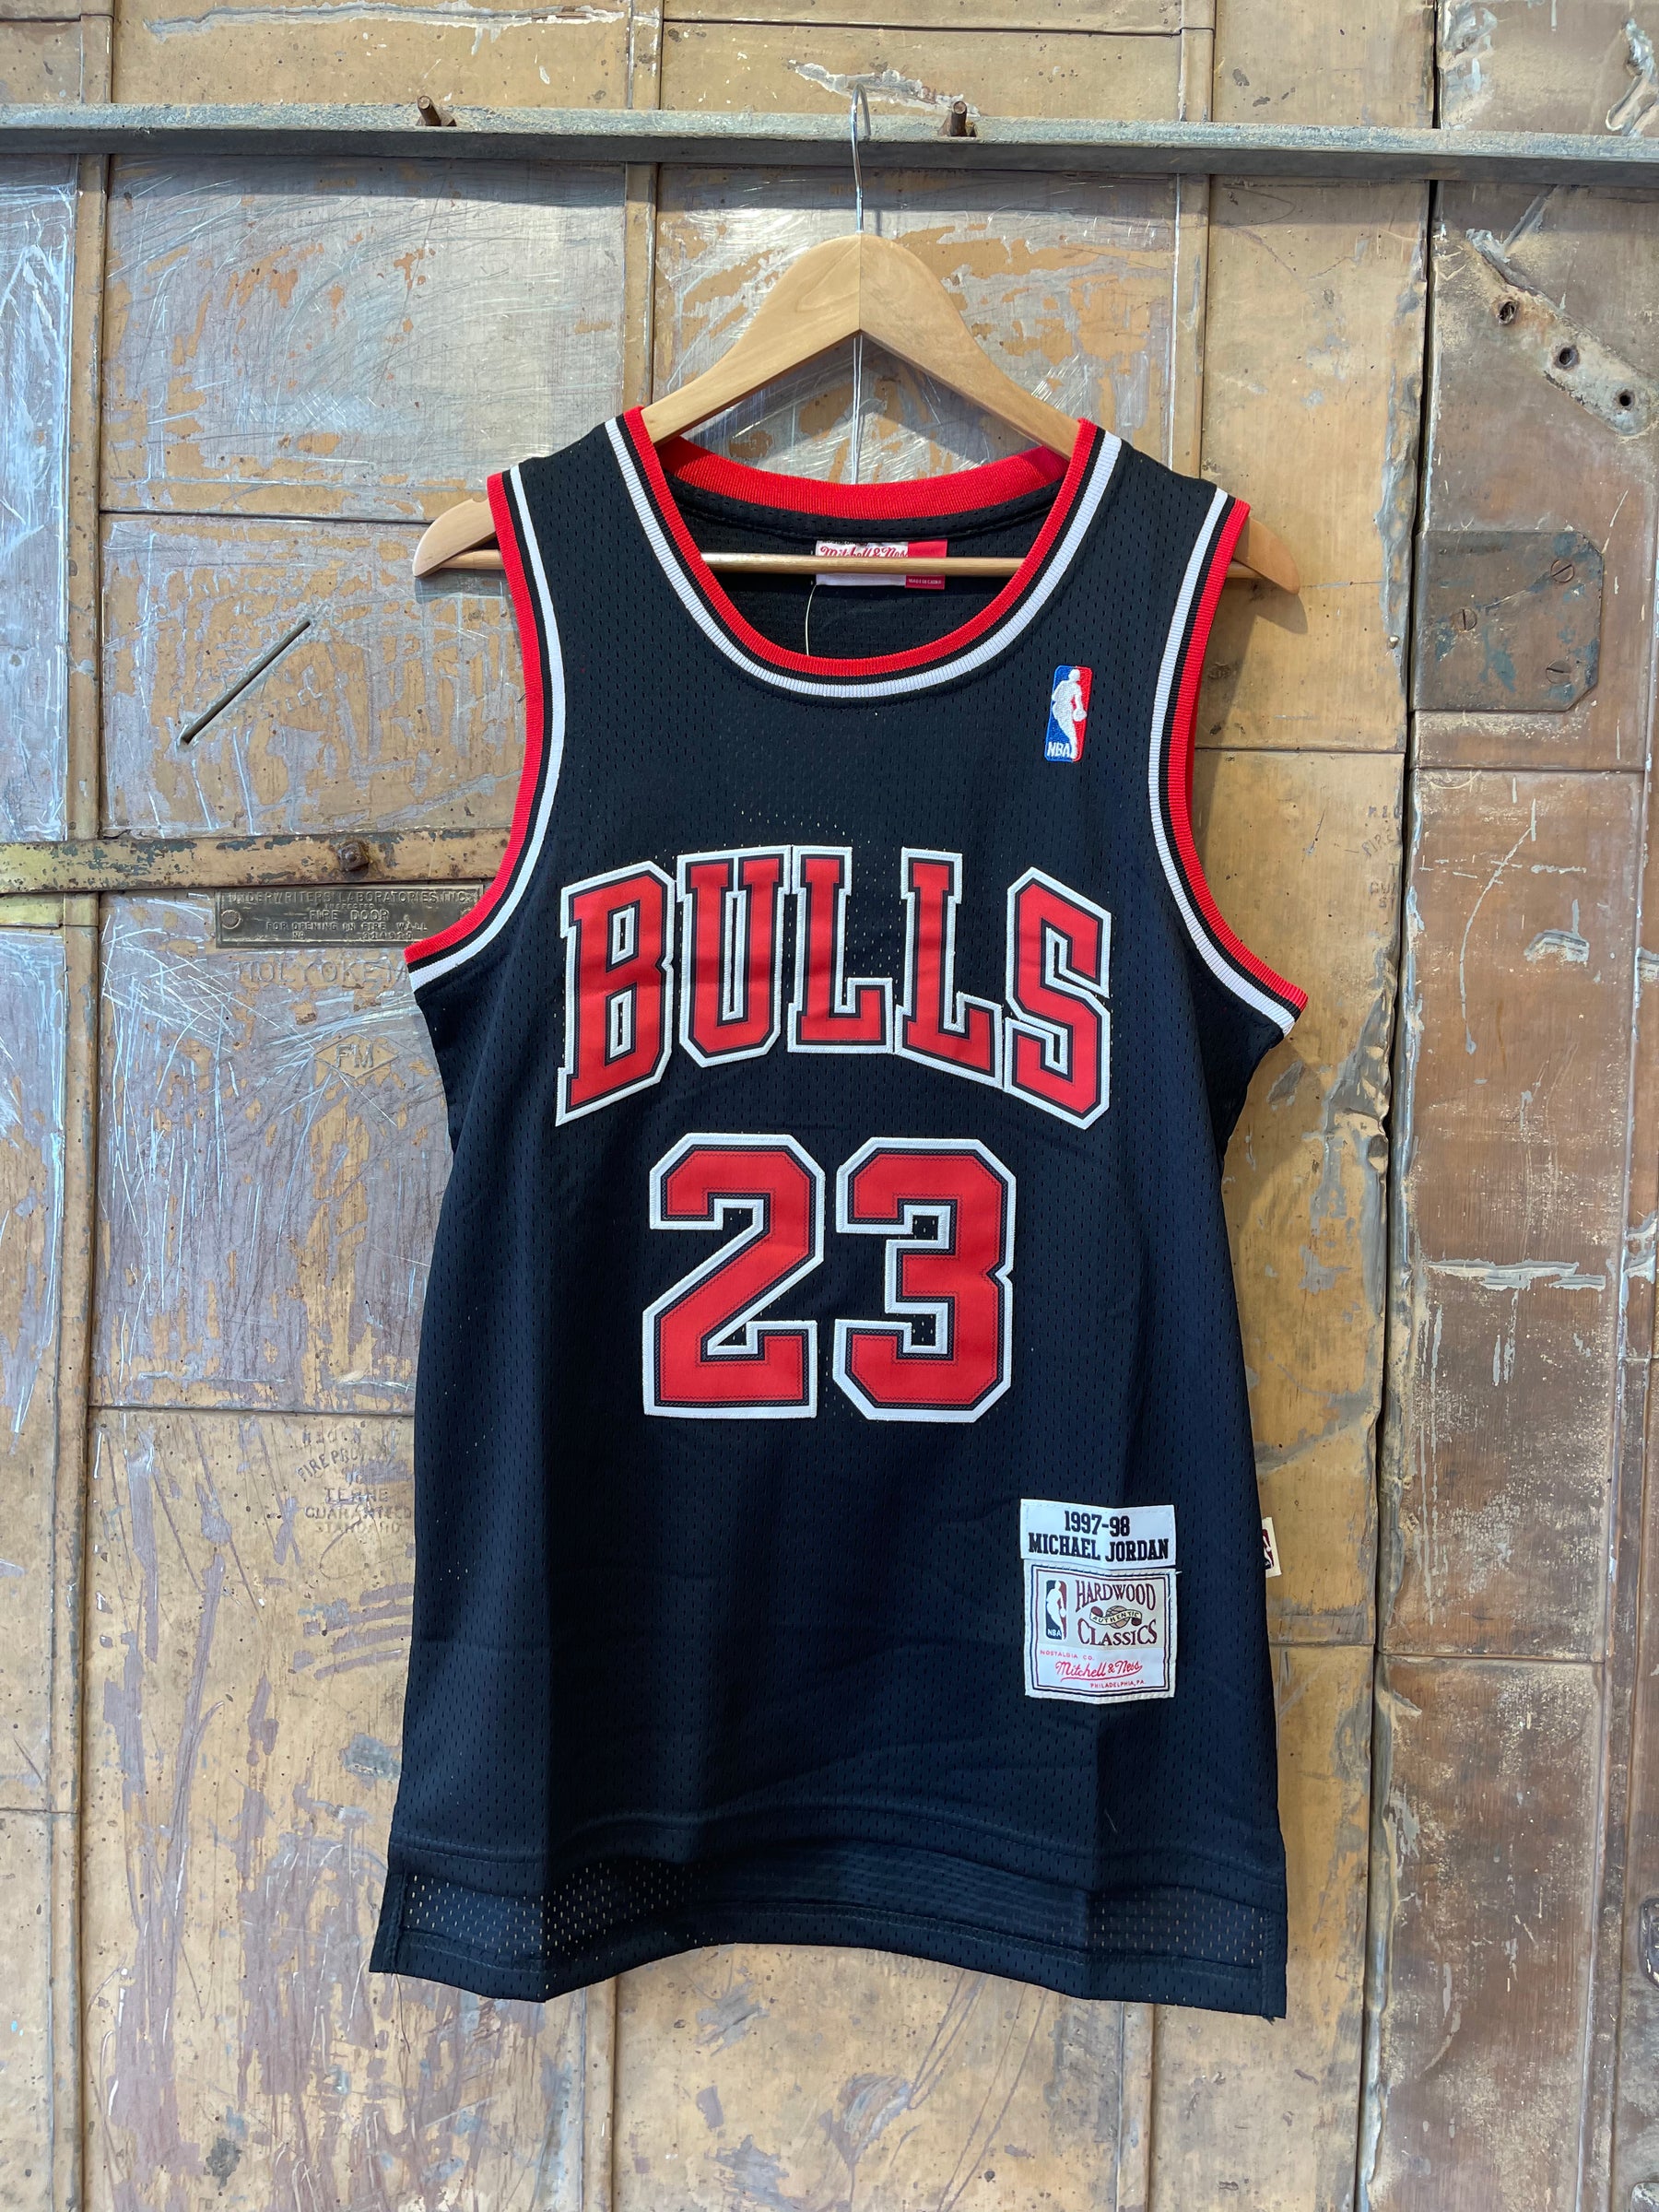 Jordan Bulls Jersey Black